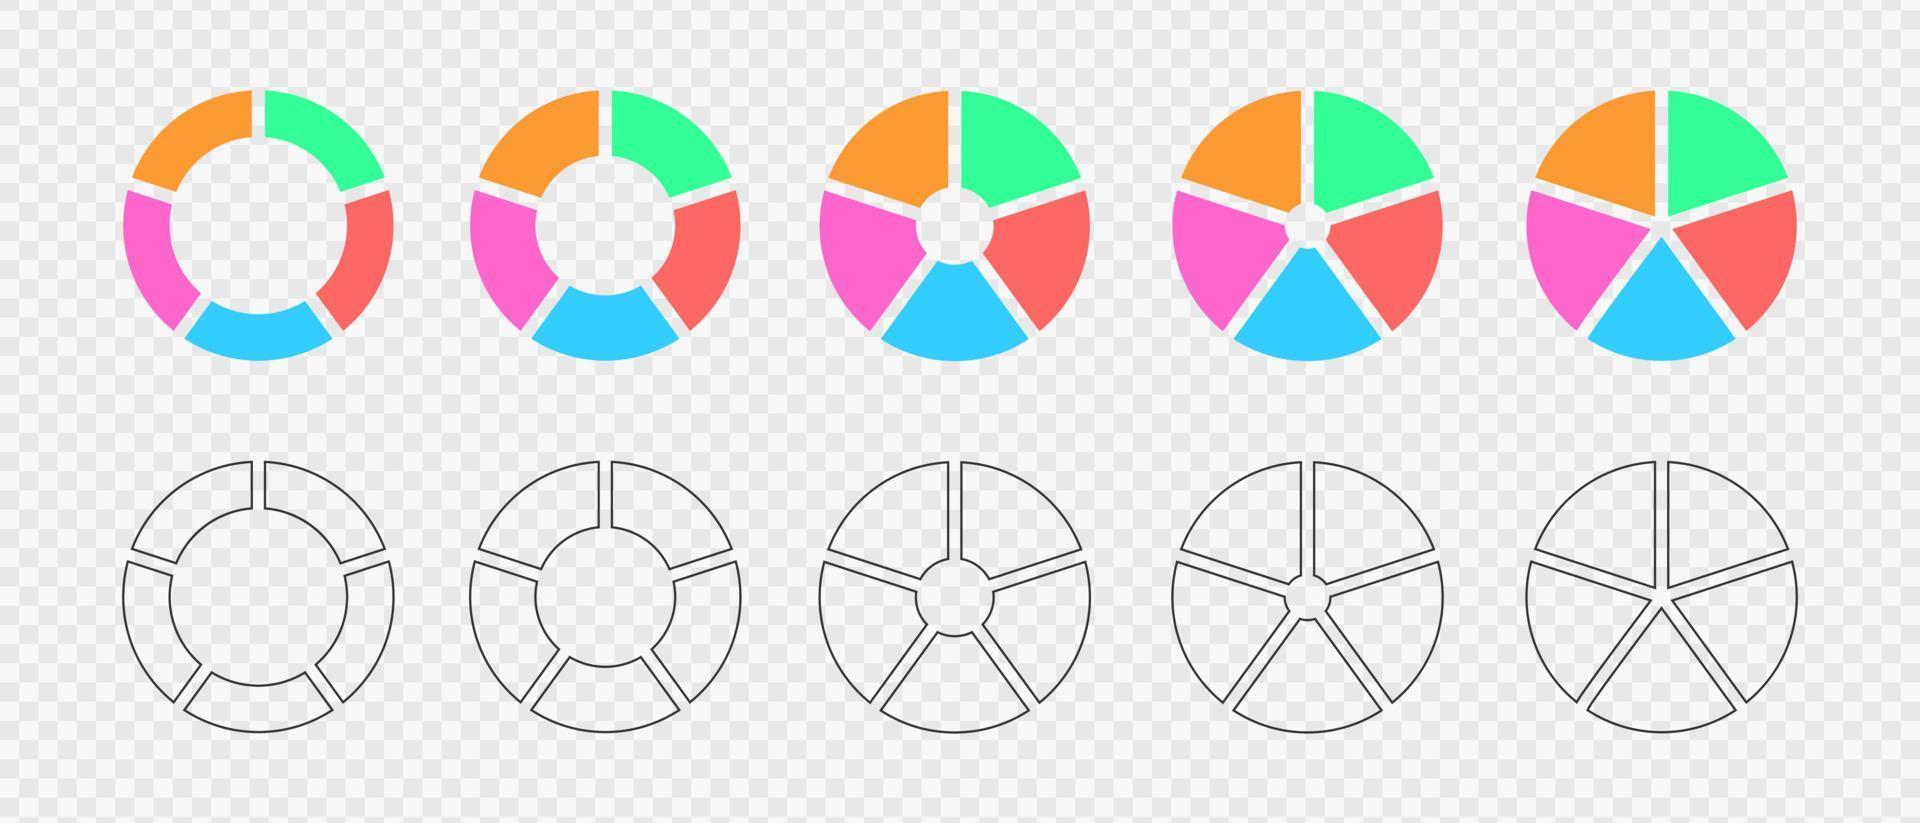 rosquilla cartas conjunto de infografía ruedas dividido en 5 5 multicolor y gráfico secciones. circulo diagramas o cargando barras. redondo formas cortar en cinco igual partes vector